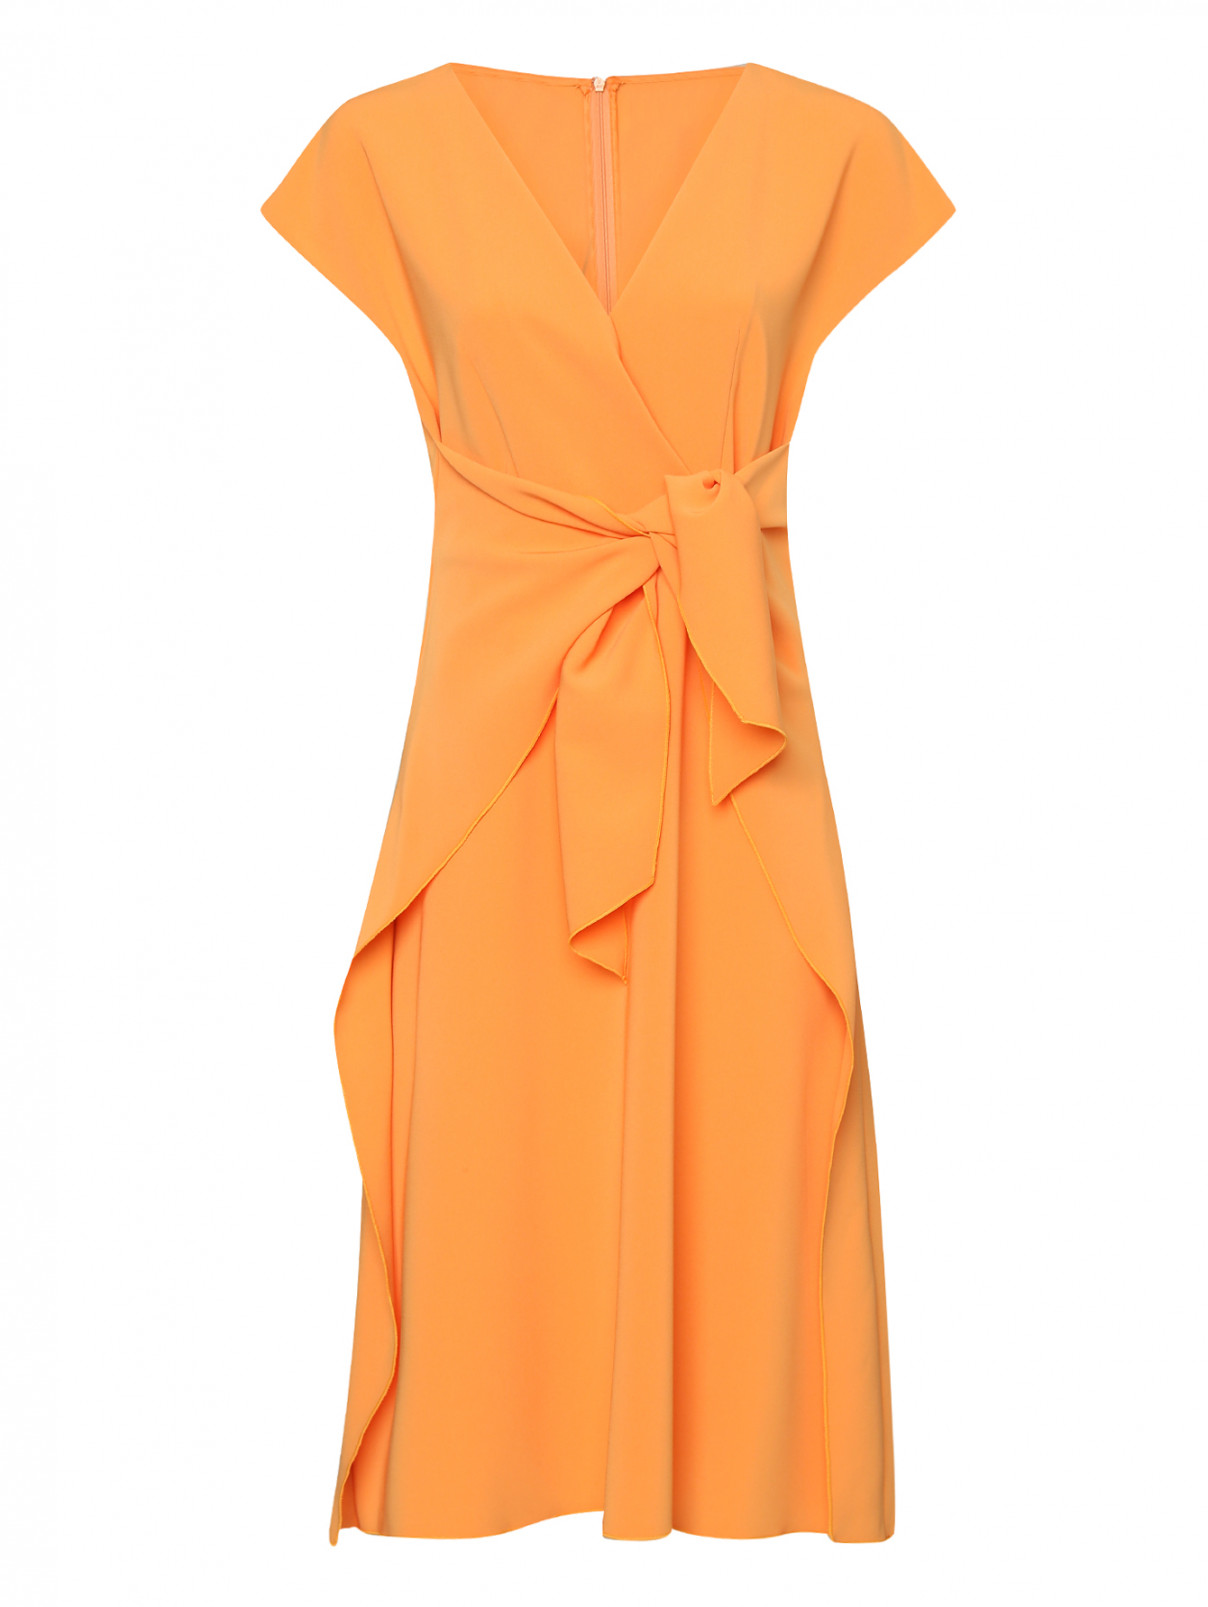 Платье-миди с бантом спереди Dorothee Schumacher  –  Общий вид  – Цвет:  Оранжевый